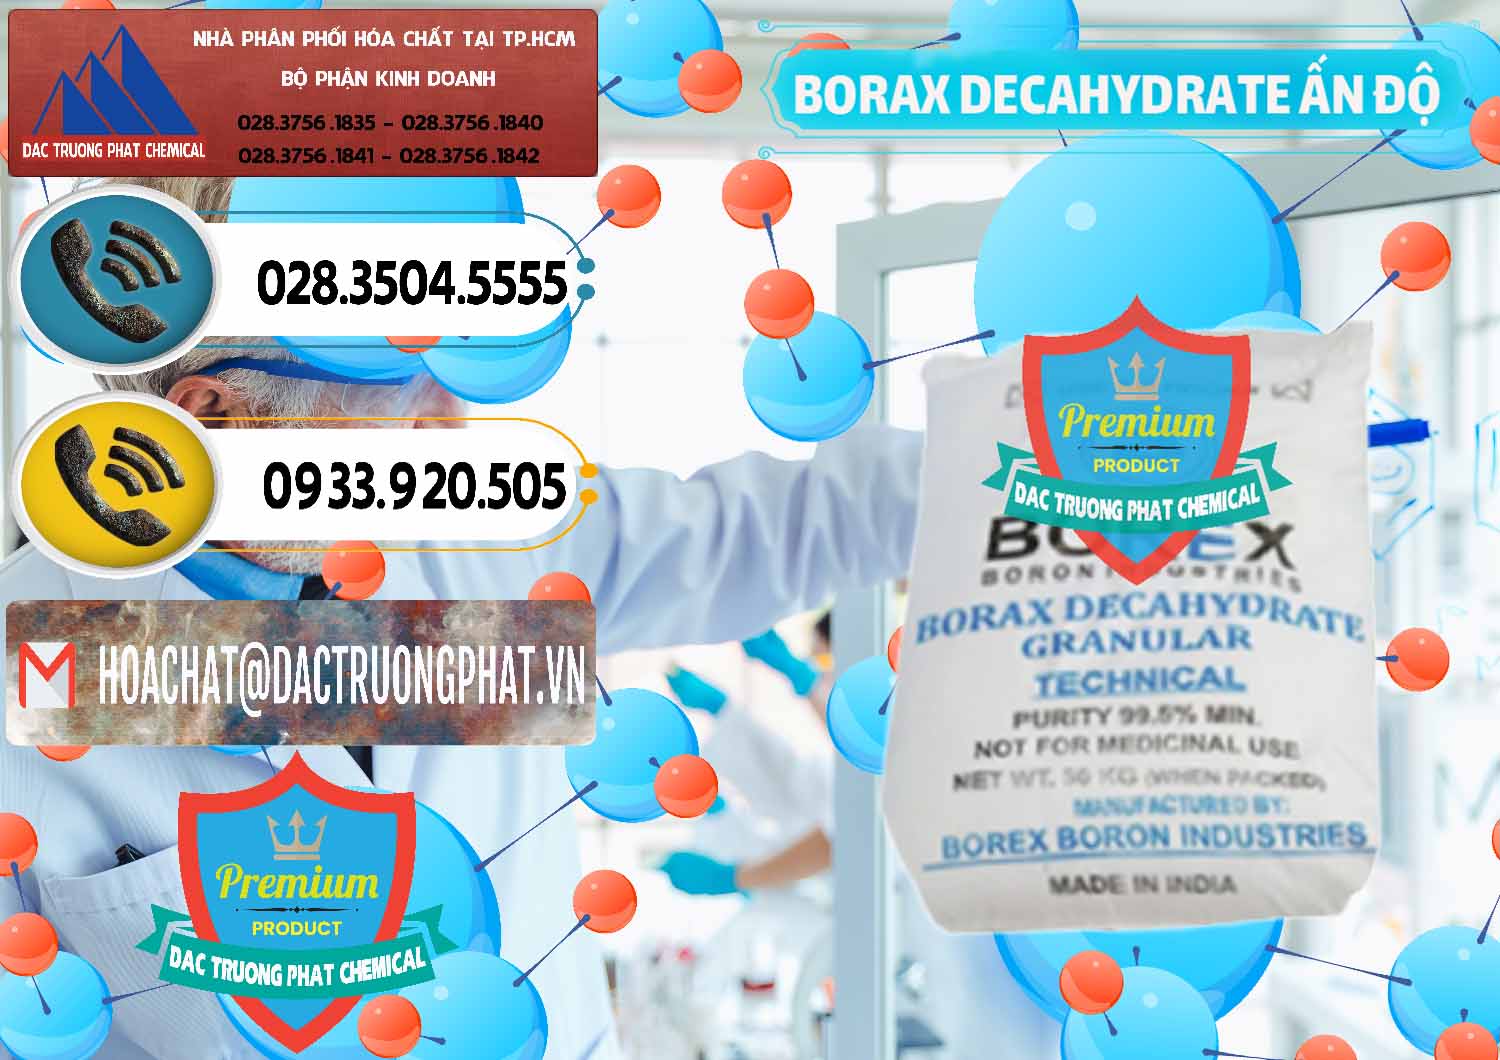 Nơi bán & phân phối Borax Decahydrate Ấn Độ India - 0449 - Công ty cung cấp & kinh doanh hóa chất tại TP.HCM - hoachatdetnhuom.vn